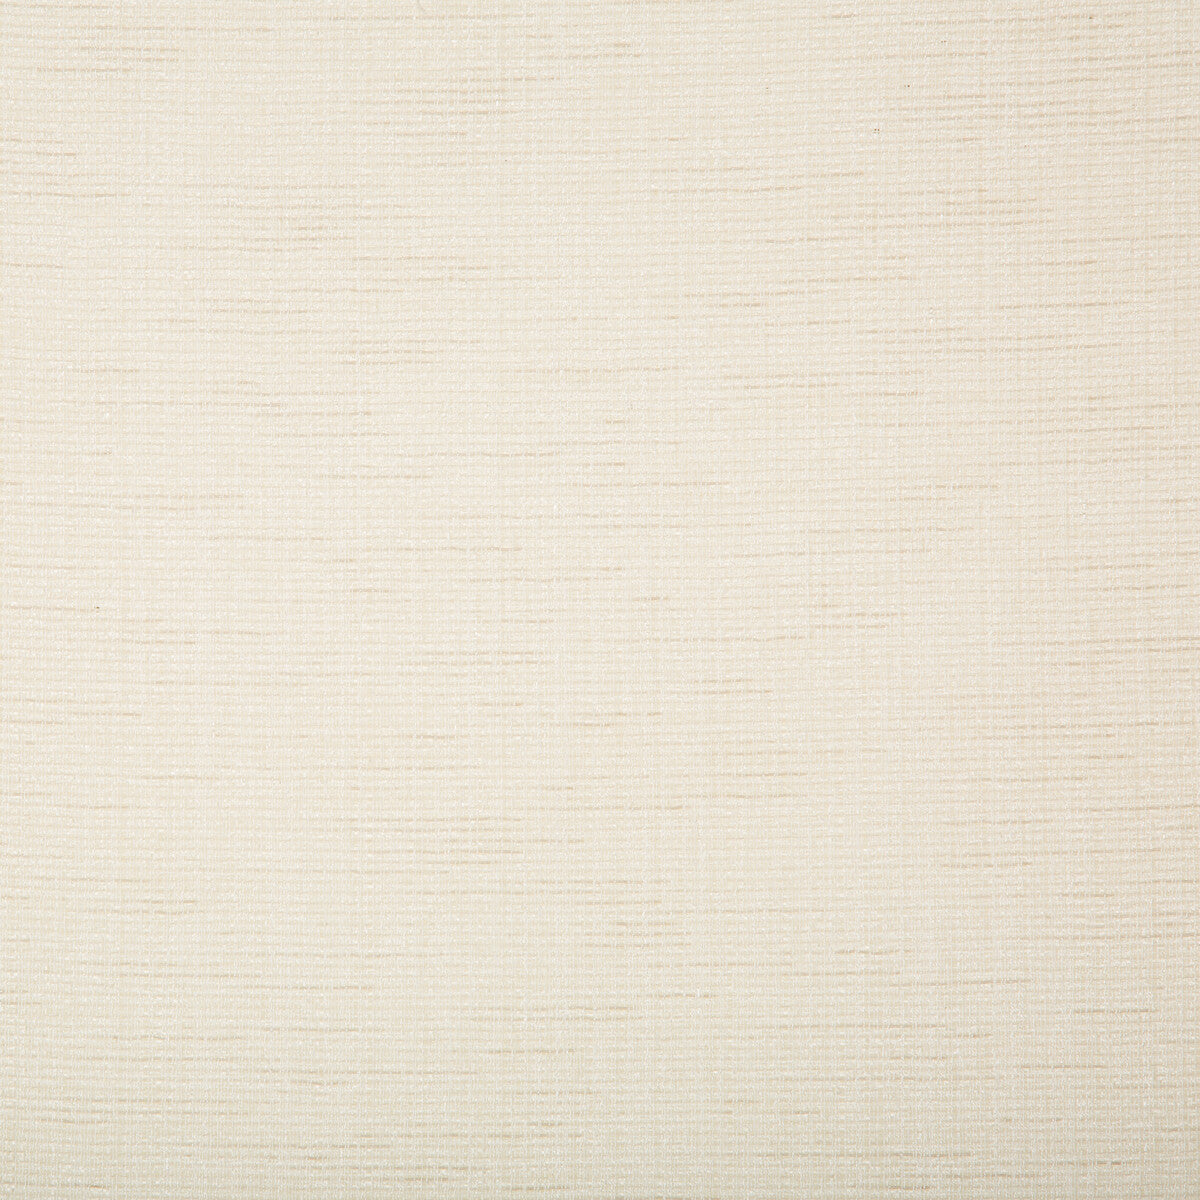 Kravet Basics fabric in 4721-1 color - pattern 4721.1.0 - by Kravet Basics